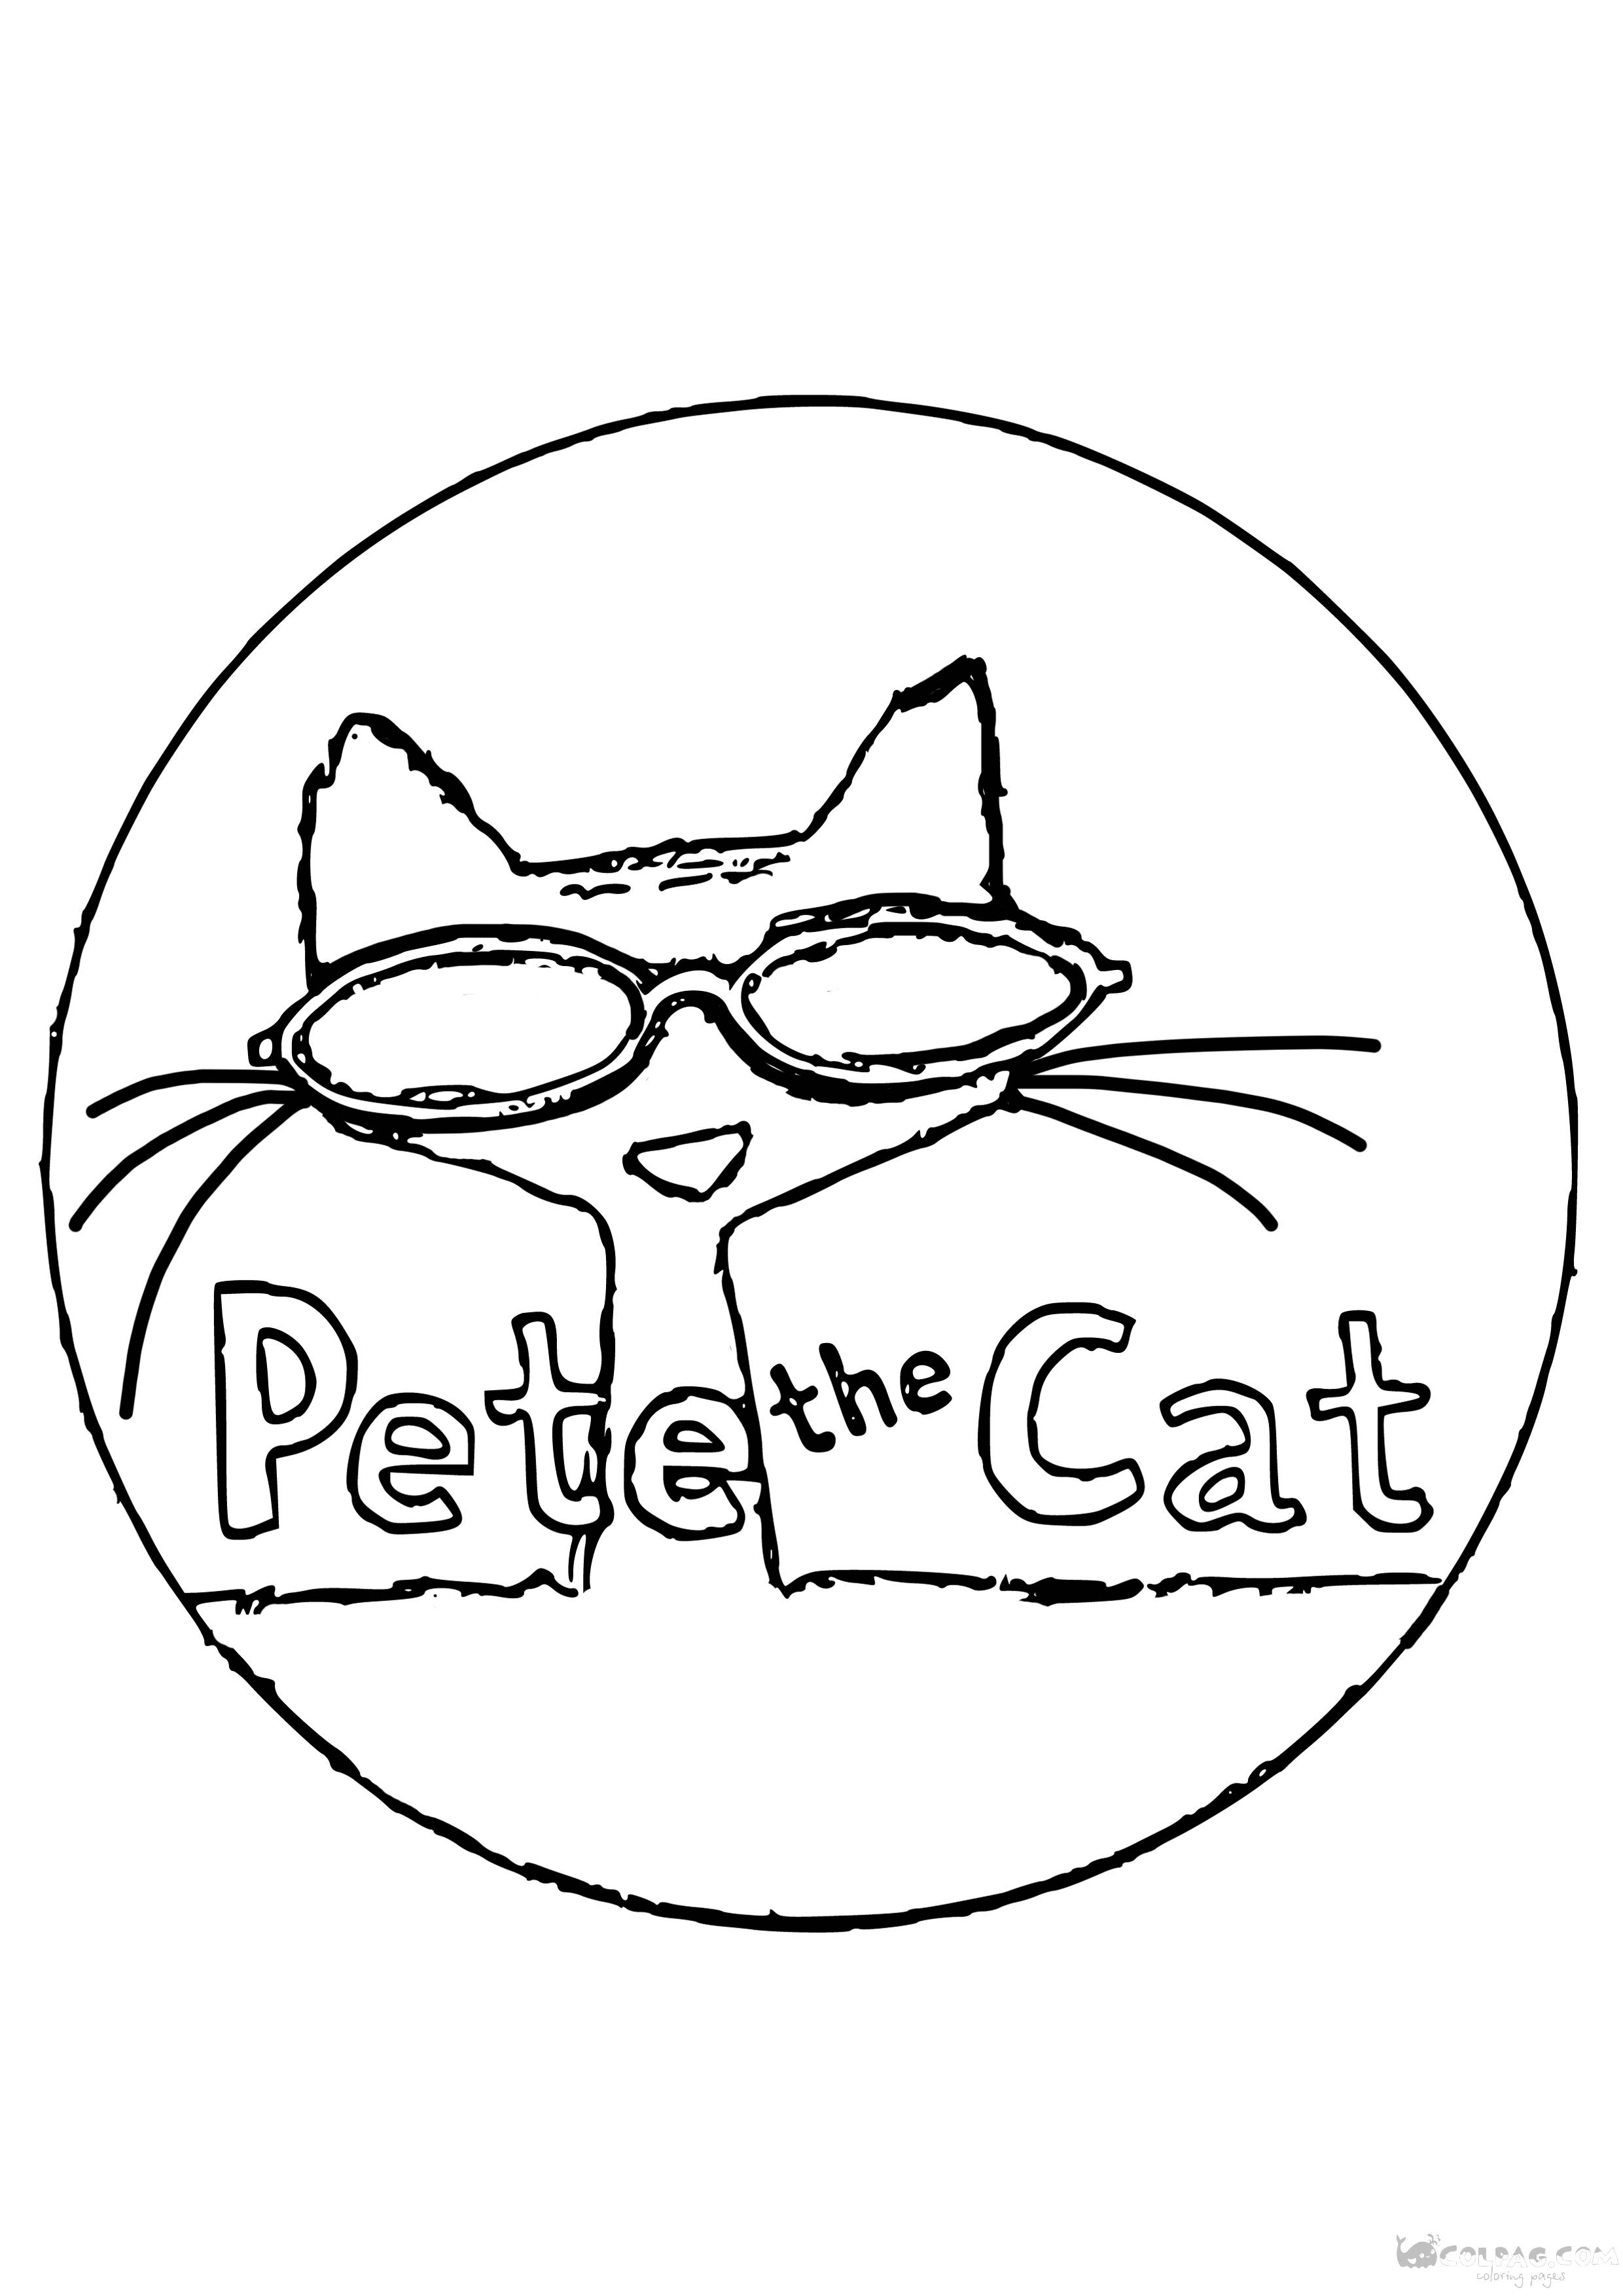 Disegni da colorare di Pete il gatto